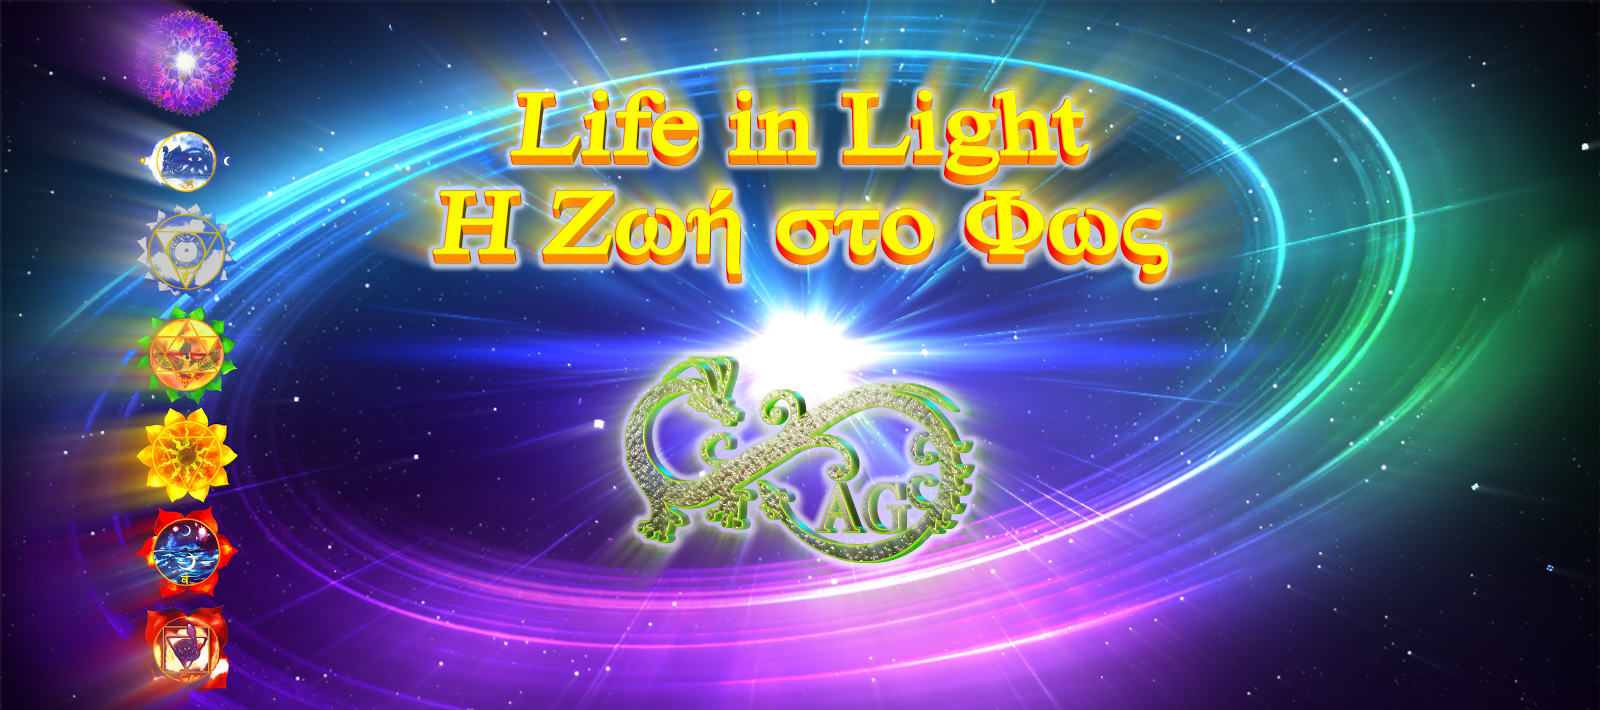 Life in Light - Η Ζωή στο Φως